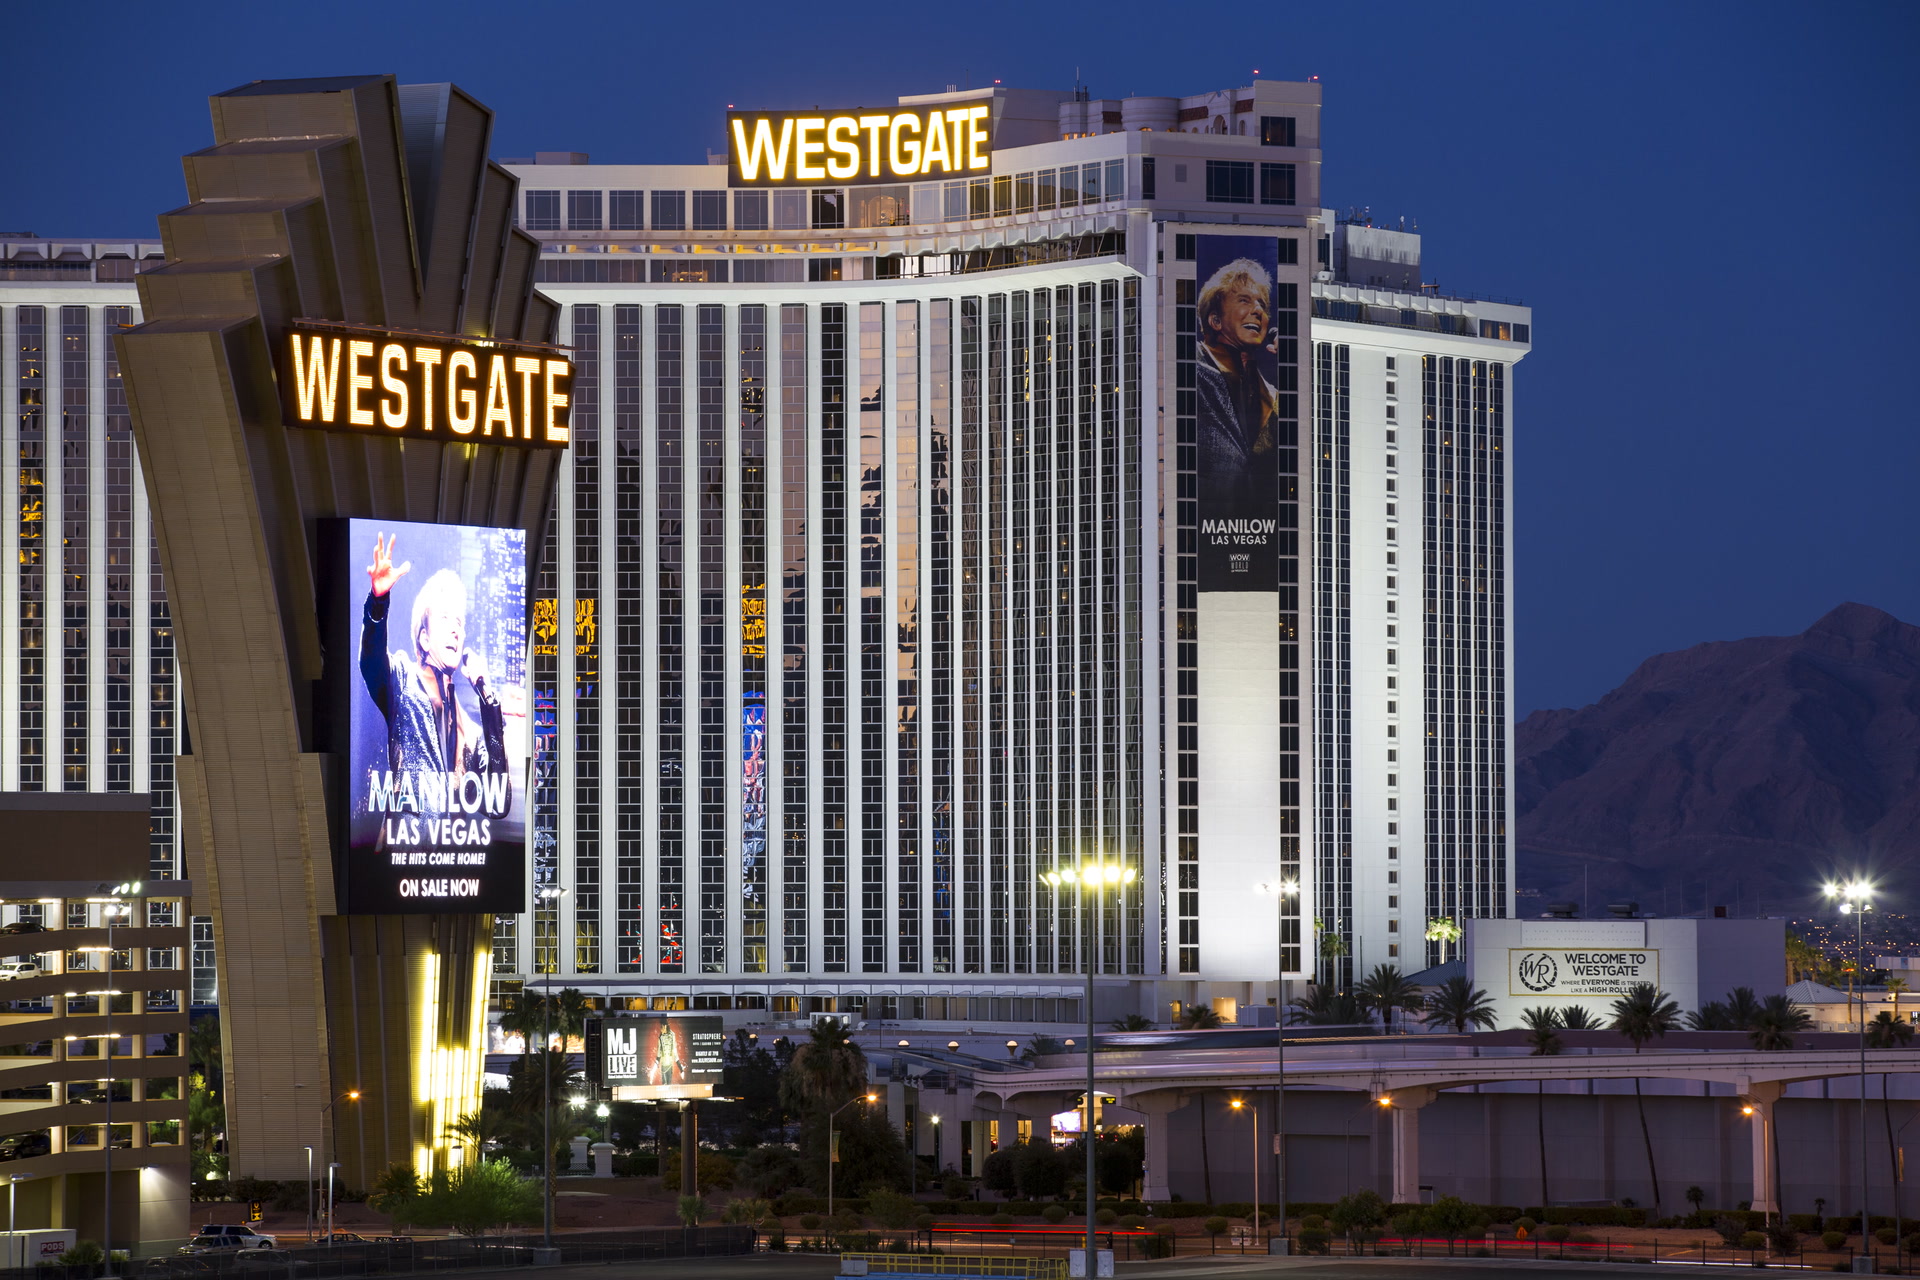 The Westgate Las Vegas